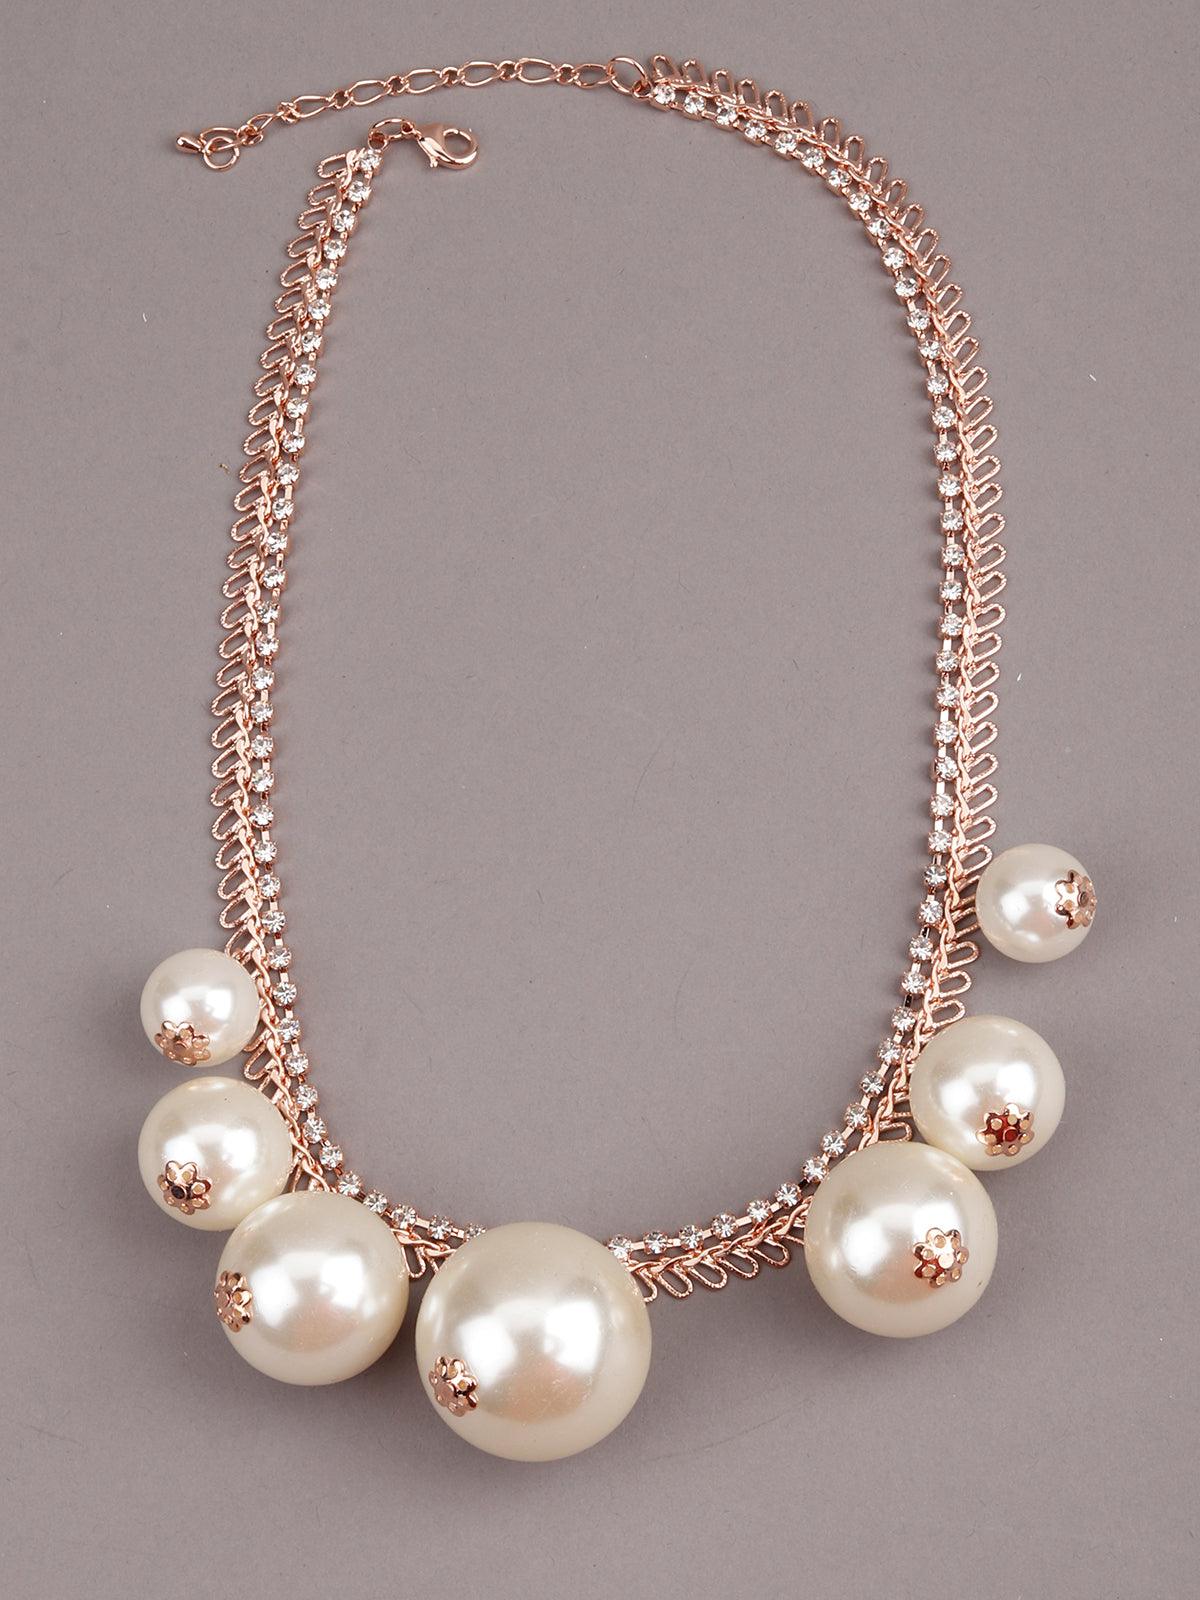 Adorable Crystal Charm Necklace - Odette